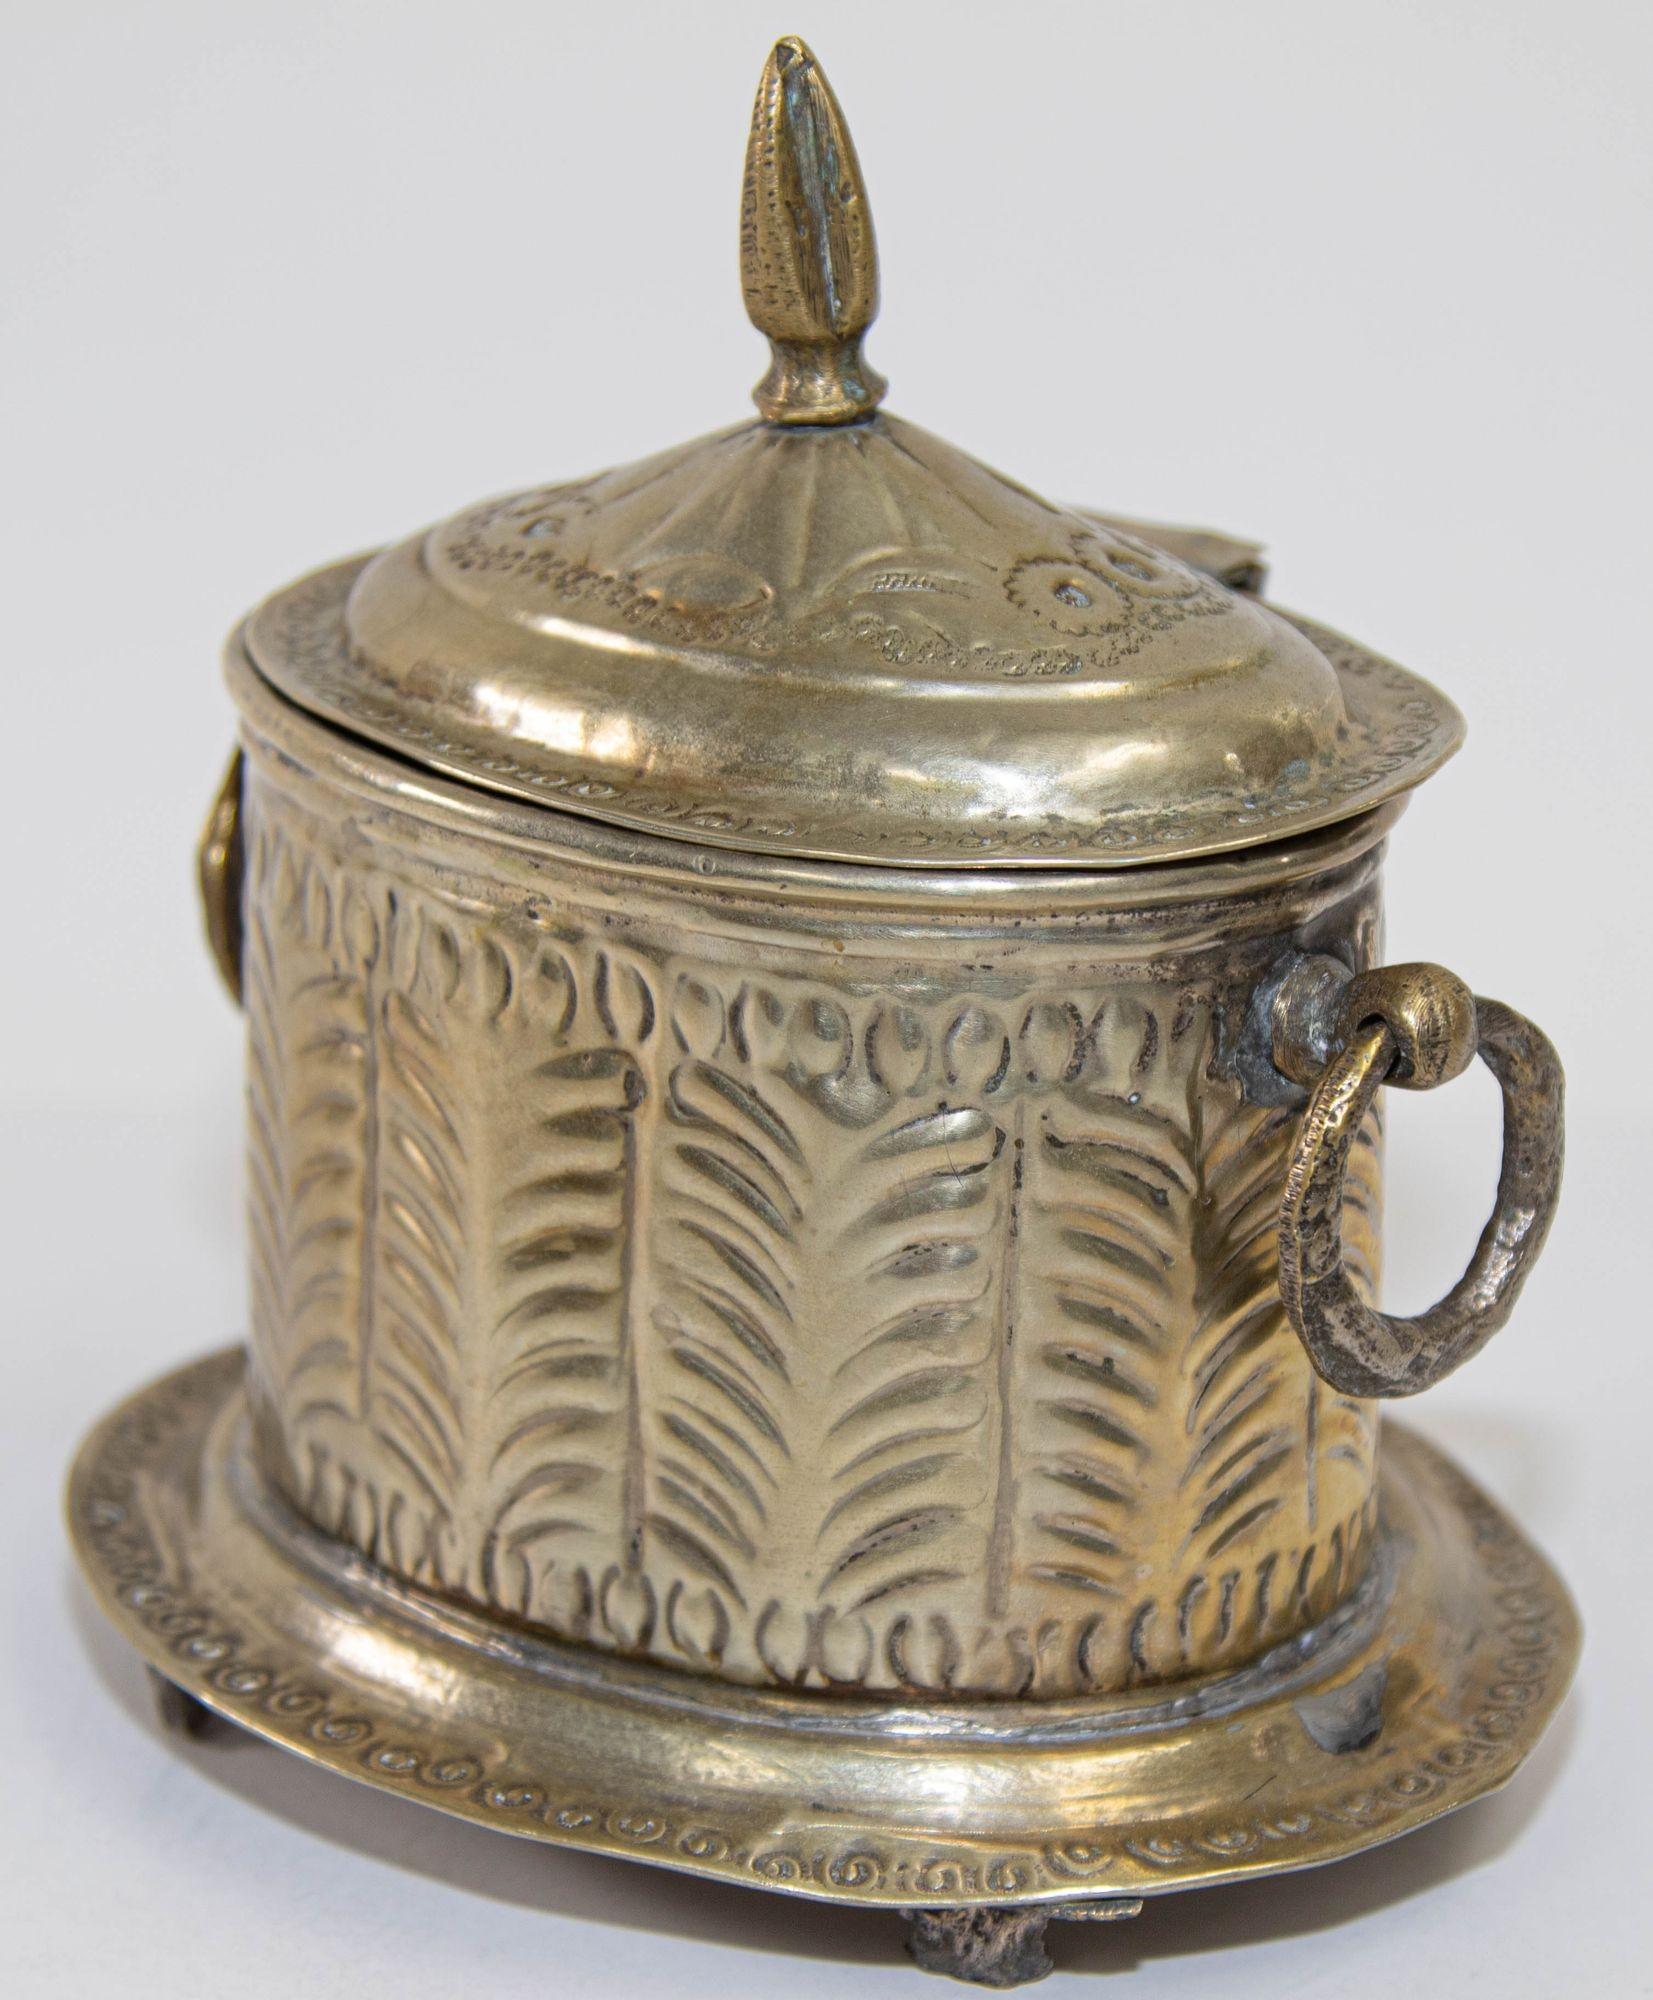 Boîte à thé sur pied en métal argenté marocain des années 1920 avec couvercle à charnière.
Cette authentique boîte marocaine en laiton argenté présente un magnifique motif géométrique gravé, une bordure perlée et des poignées en forme d'anneau. Elle